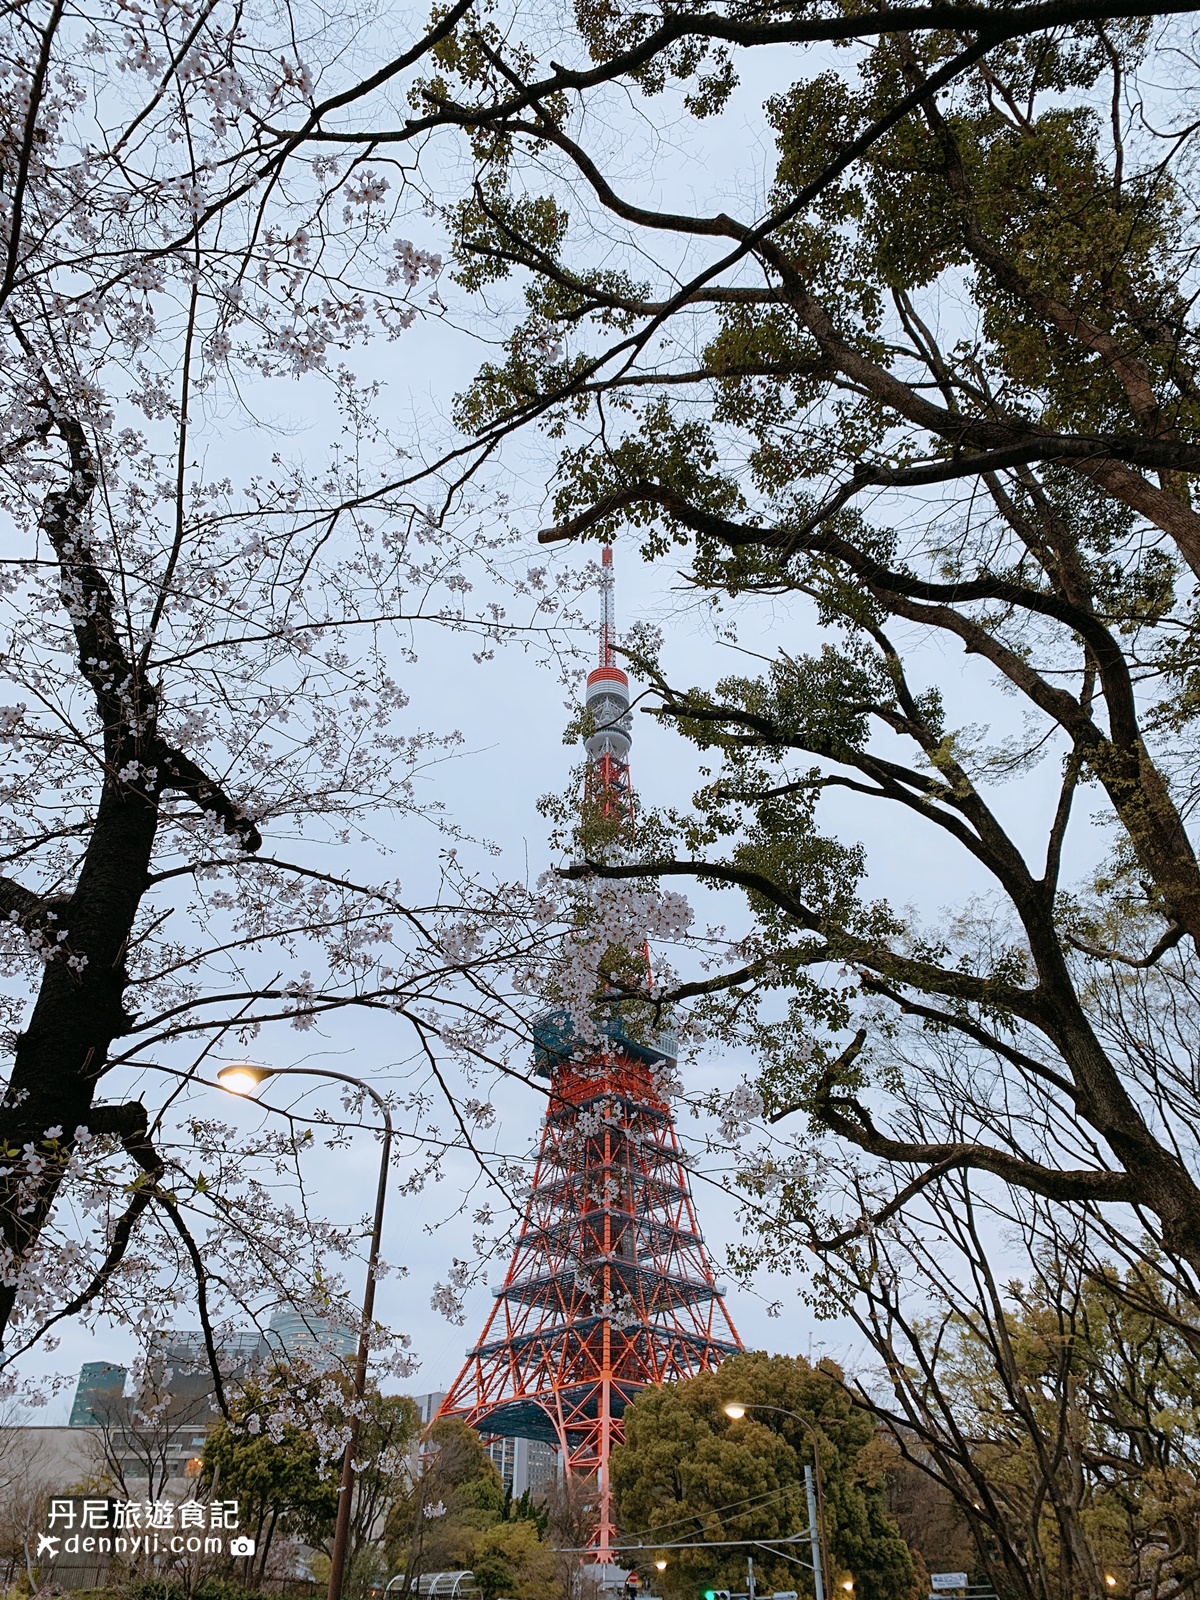 東京鐵塔旁芝公園賞櫻點